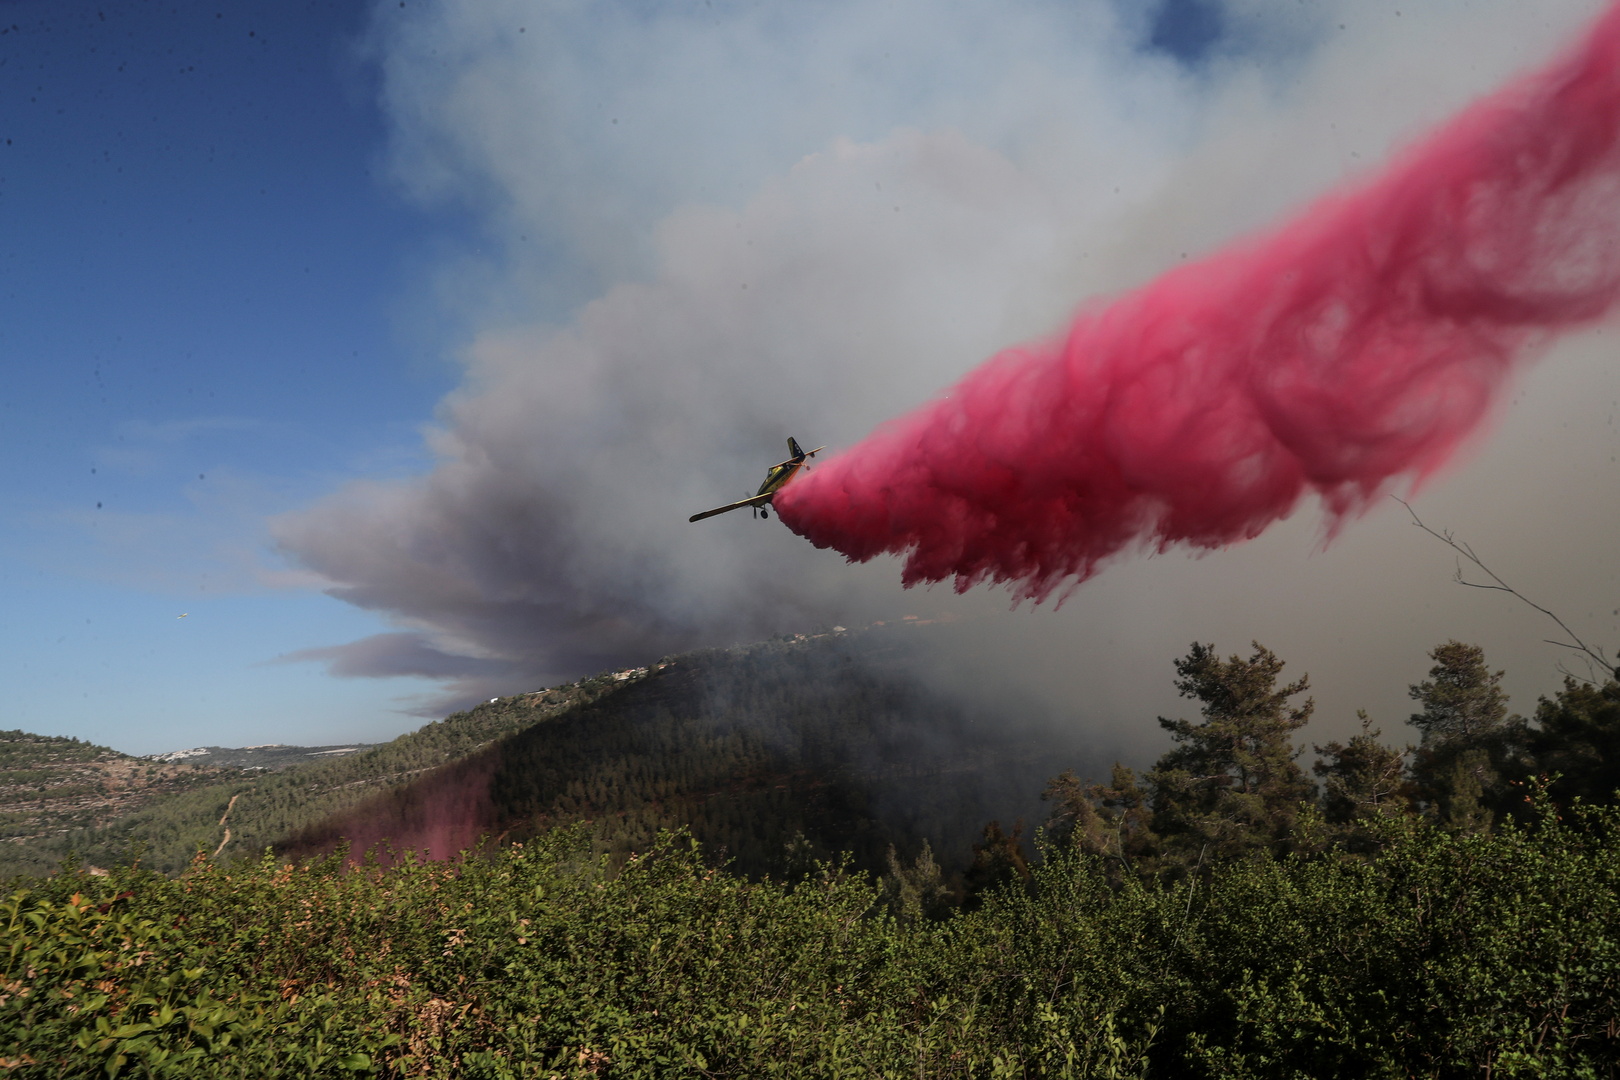 إسرائيل تطلب المساعدة الدولية لإخماد حرائق جبال القدس